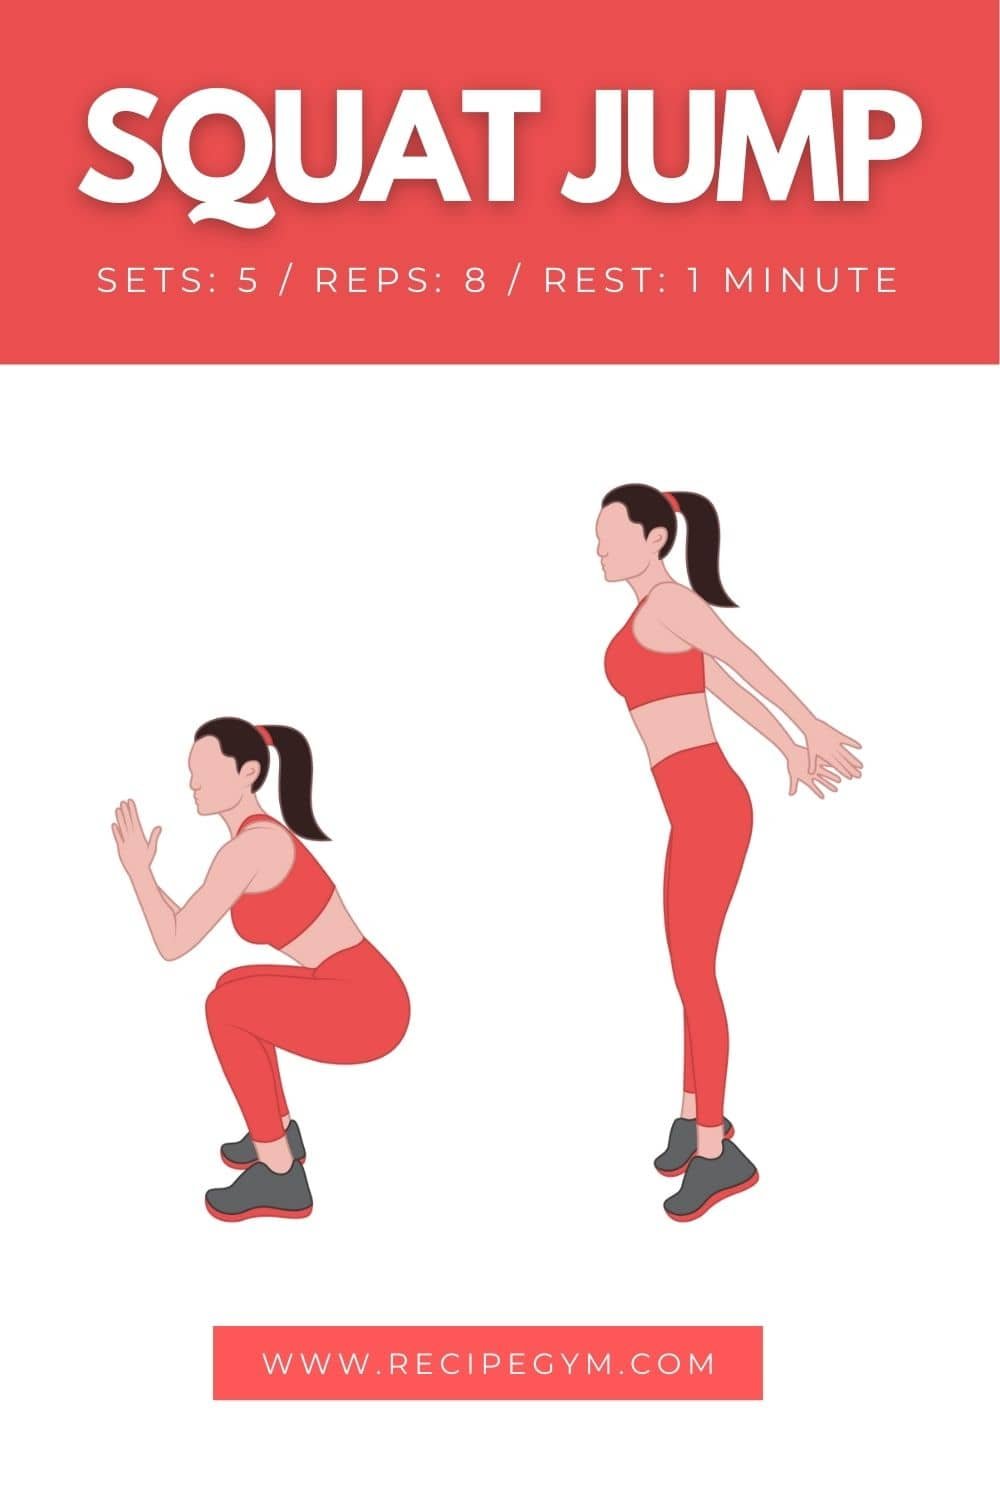 Squat jump workout